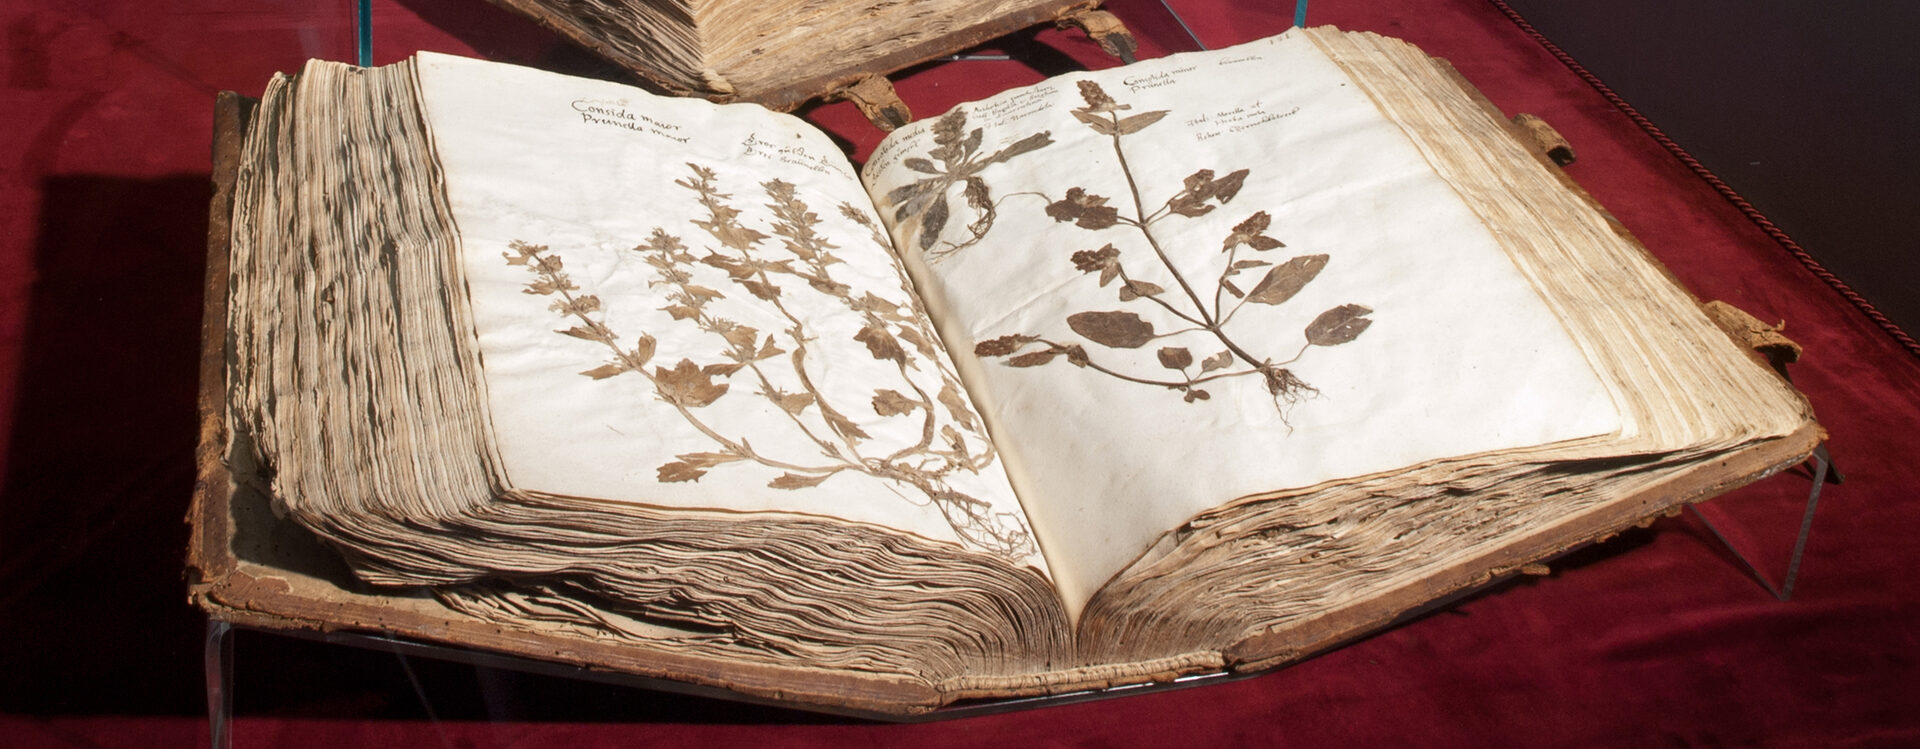 Aufgeschlagener Band des Herbarium Ratzenberger von 1592. Drei Pflanzen sind auf Papier geklebt.